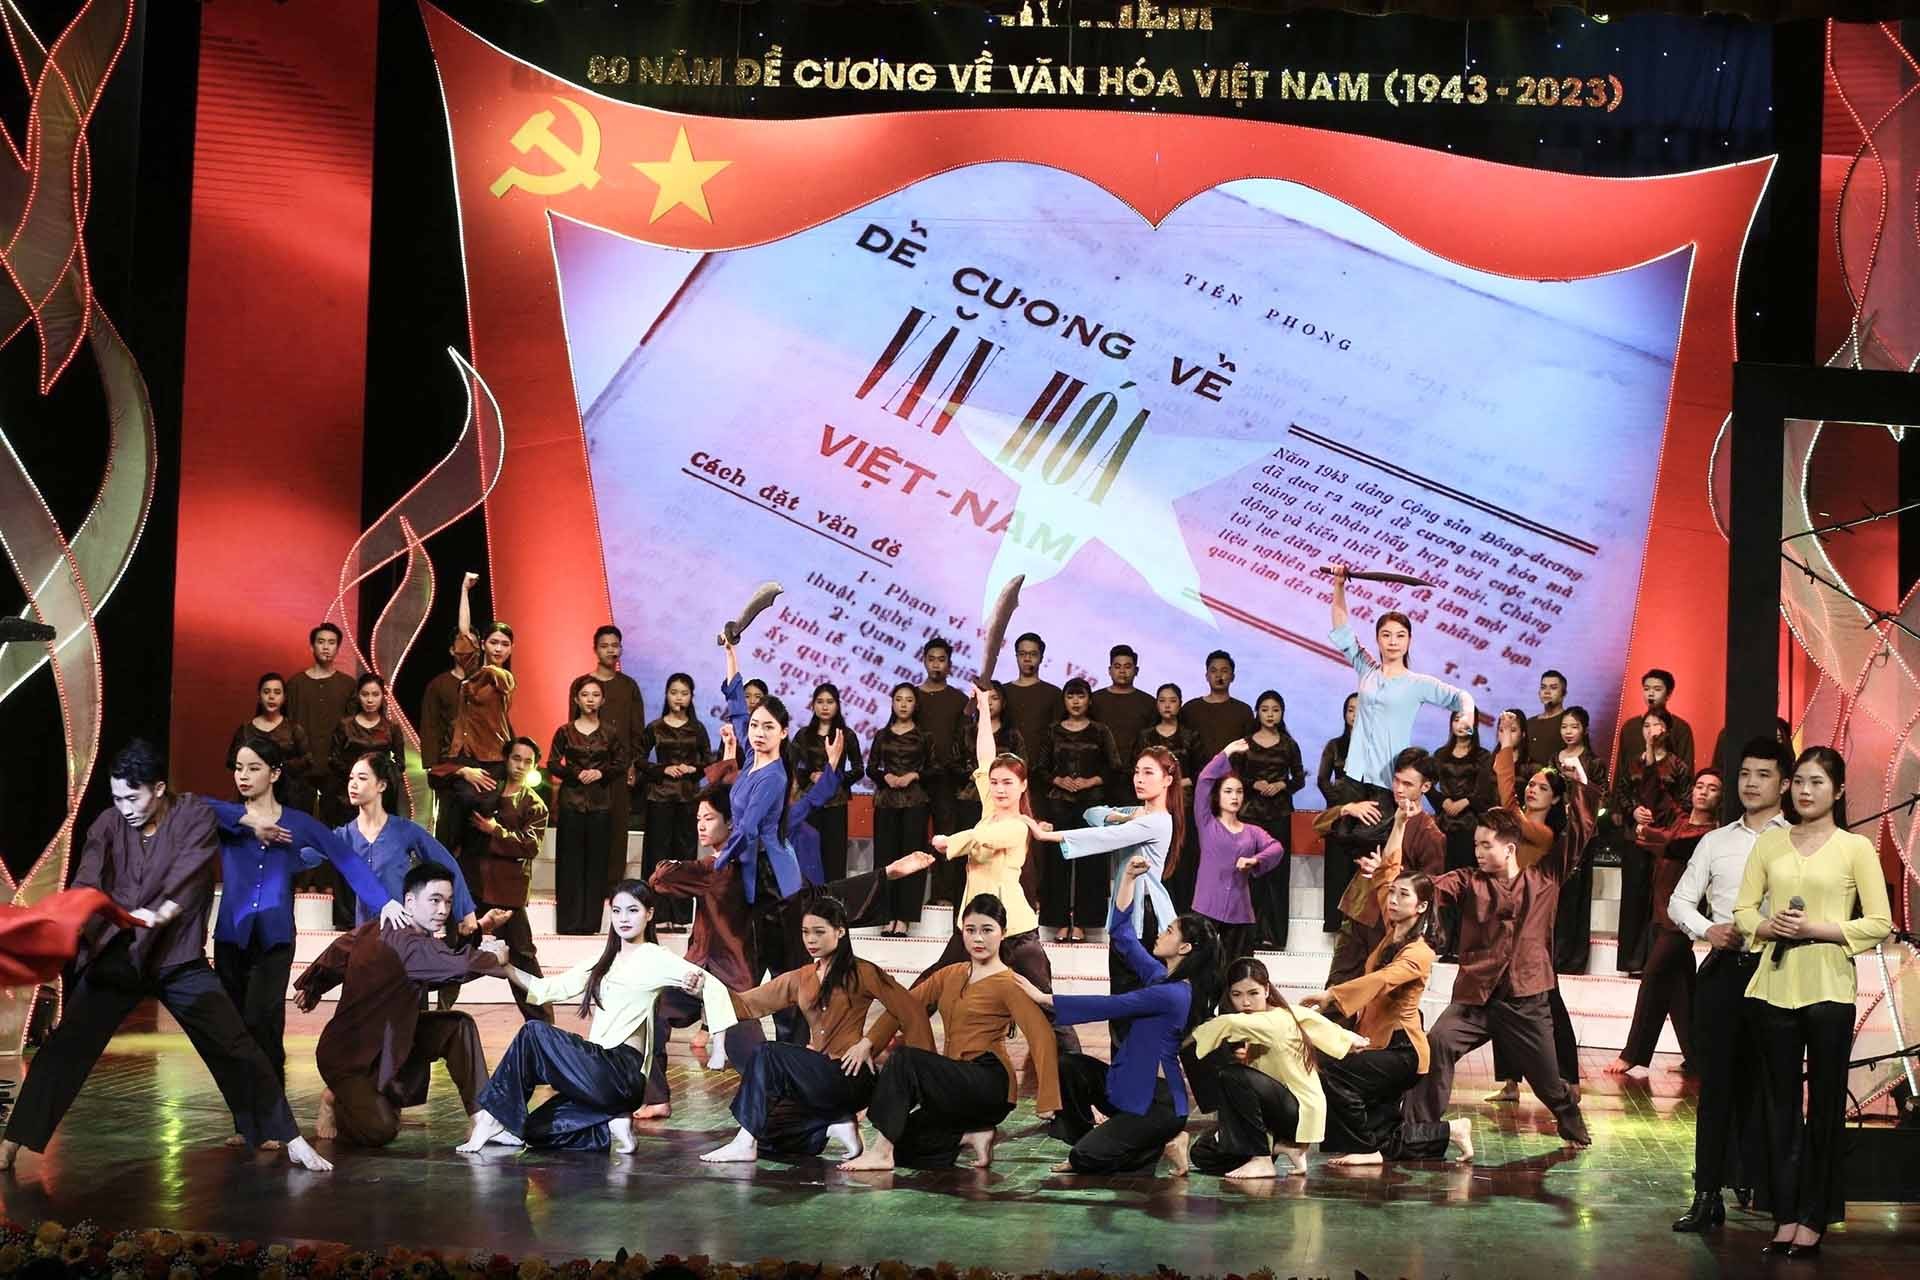 Lễ kỷ niệm 80 năm ra đời Đề cương về văn hóa Việt Nam, ngày 28/2/2023.  (Nguồn: Bộ Văn hoá, Thể thao và Du lịch)